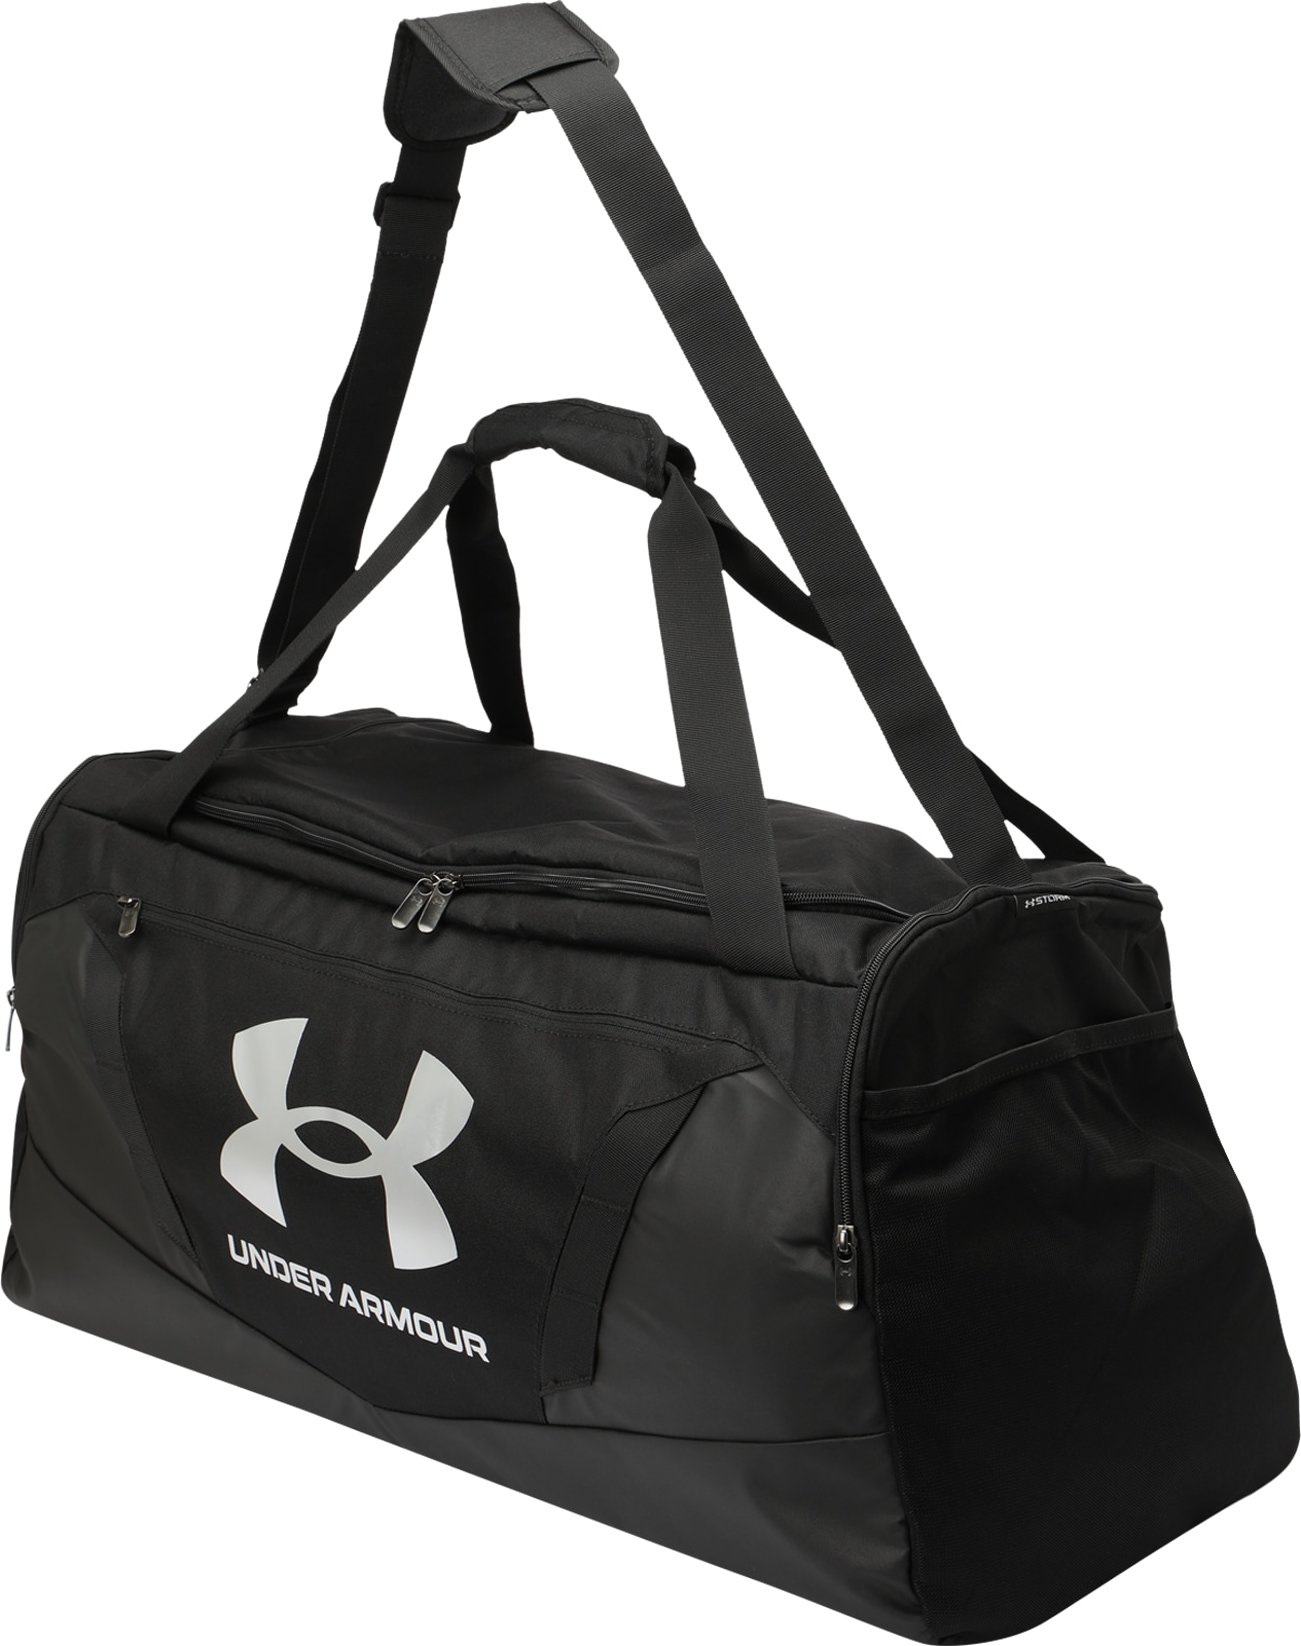 UNDER ARMOUR Sportovní taška 'Undeniable 5.0' černá / bílá